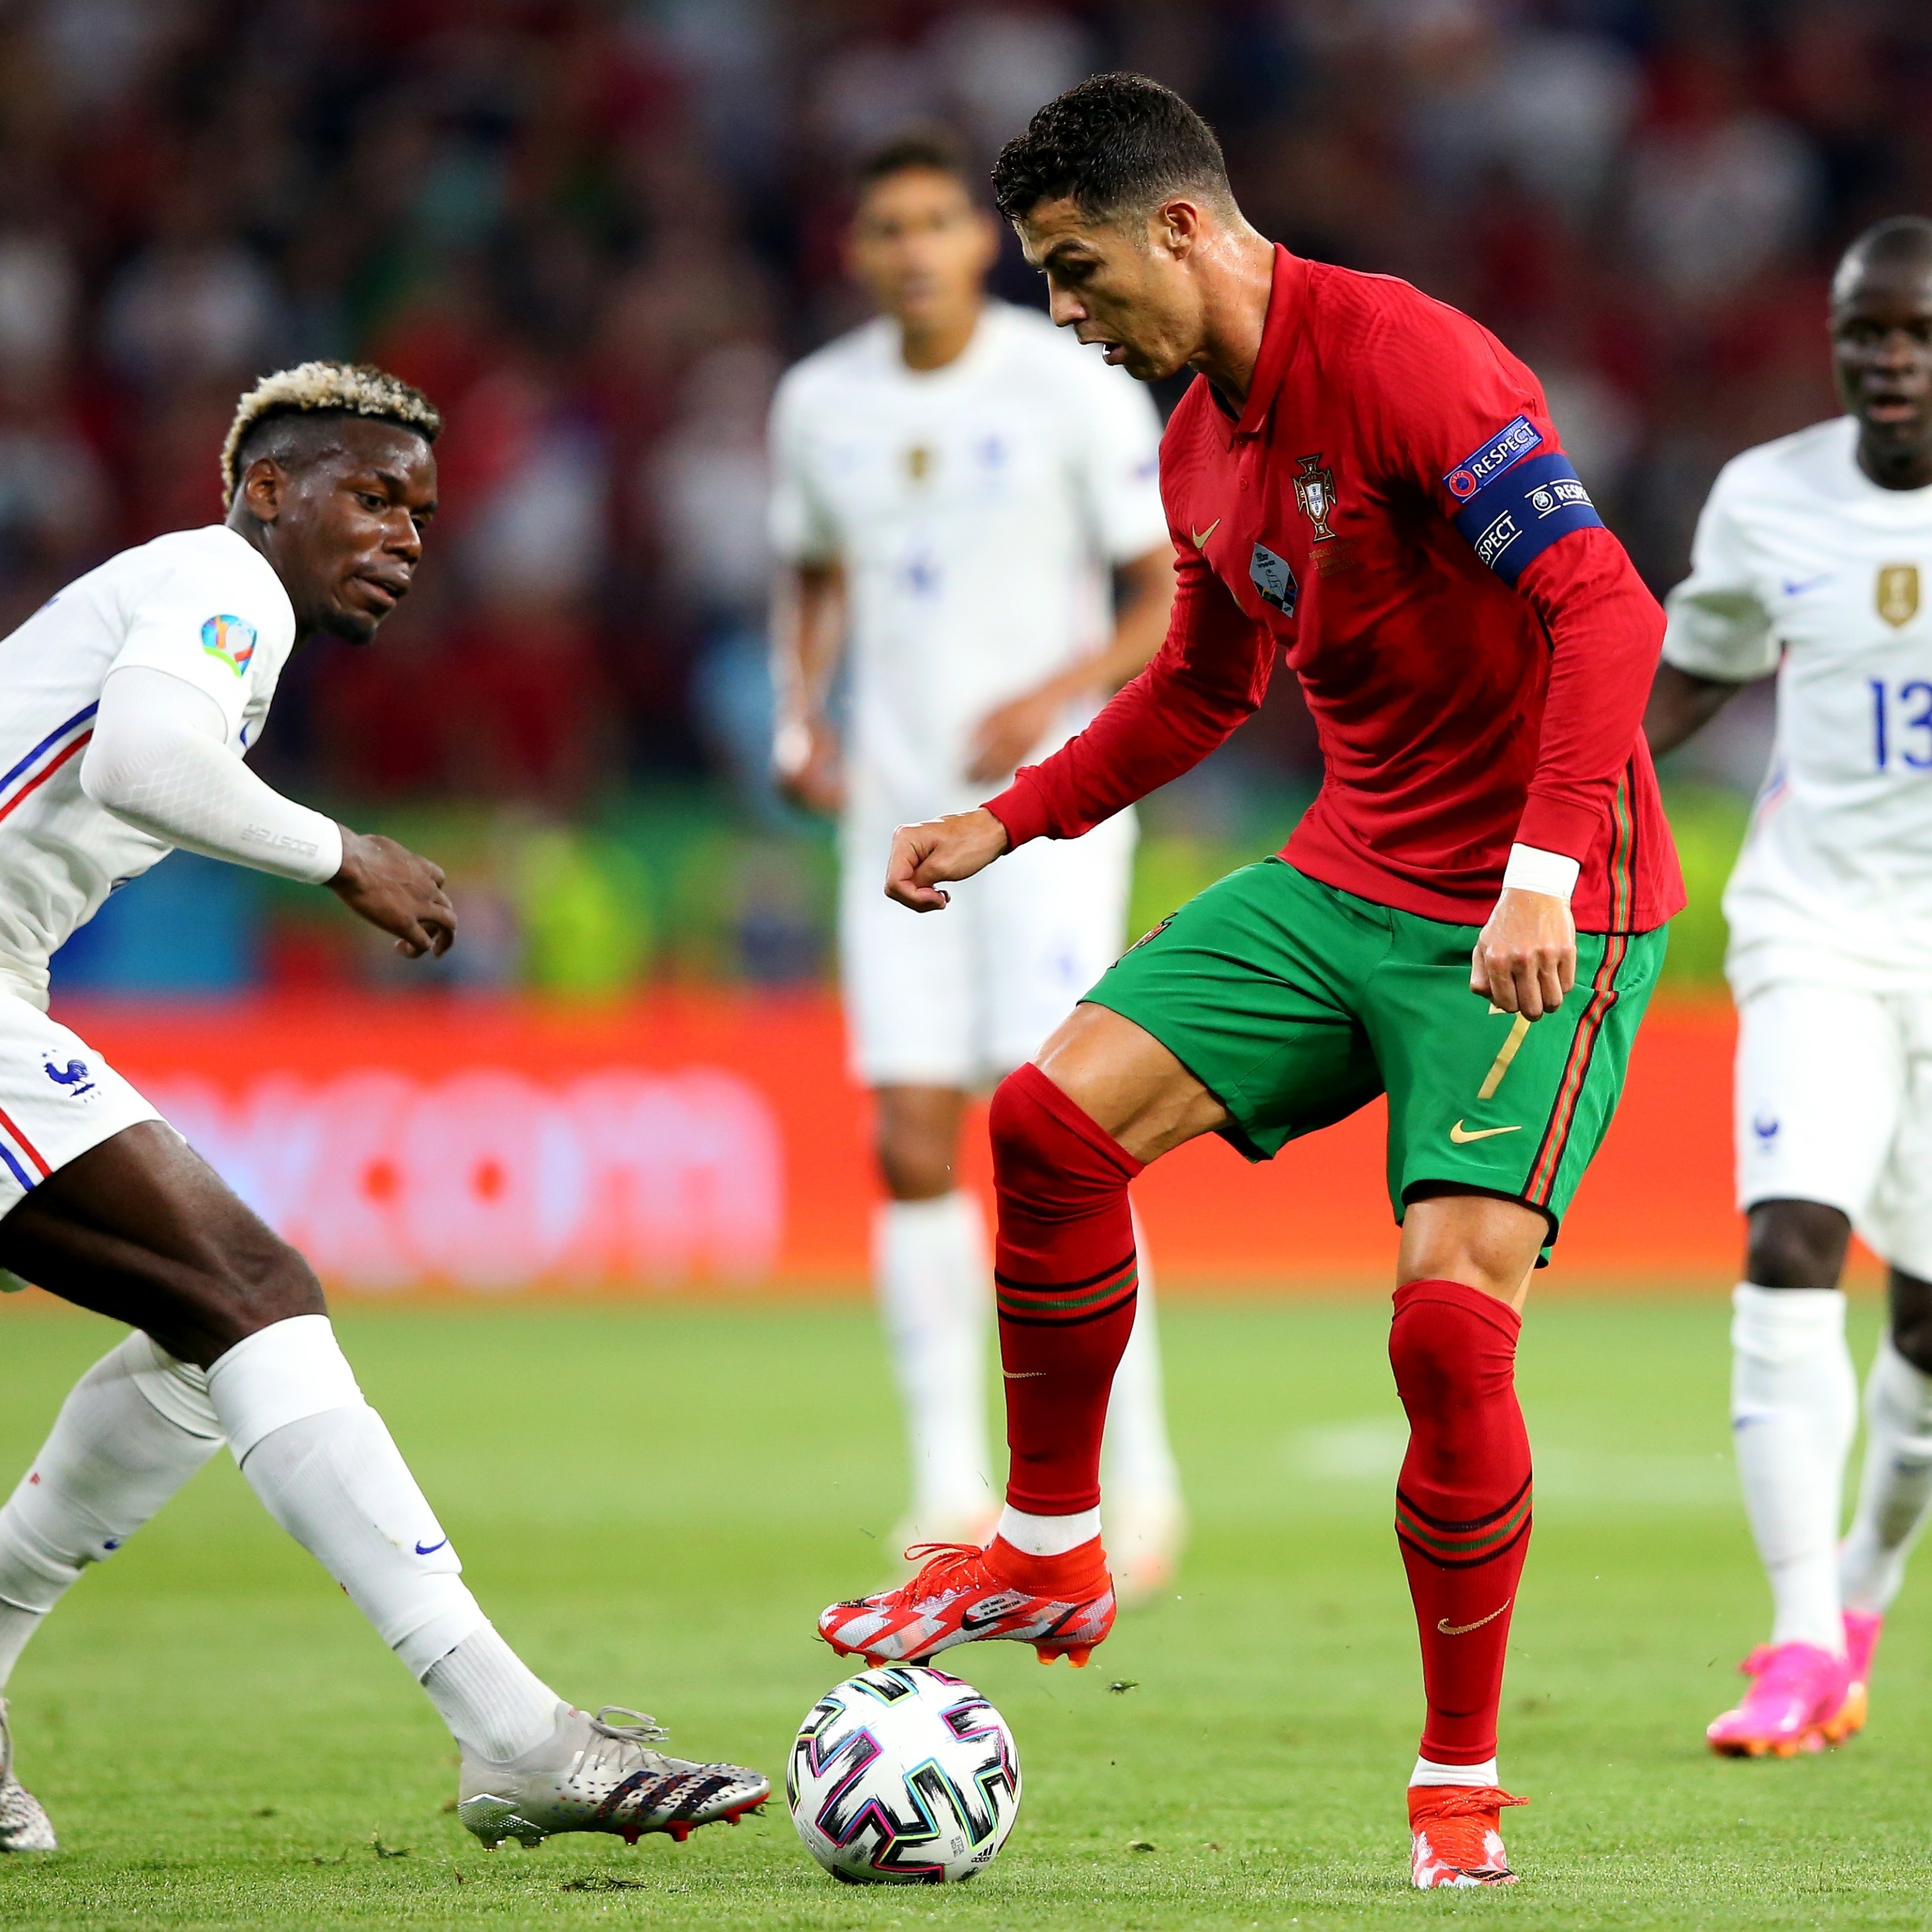 França e Portugal têm jogos decisivos hoje para Mundial de futebol